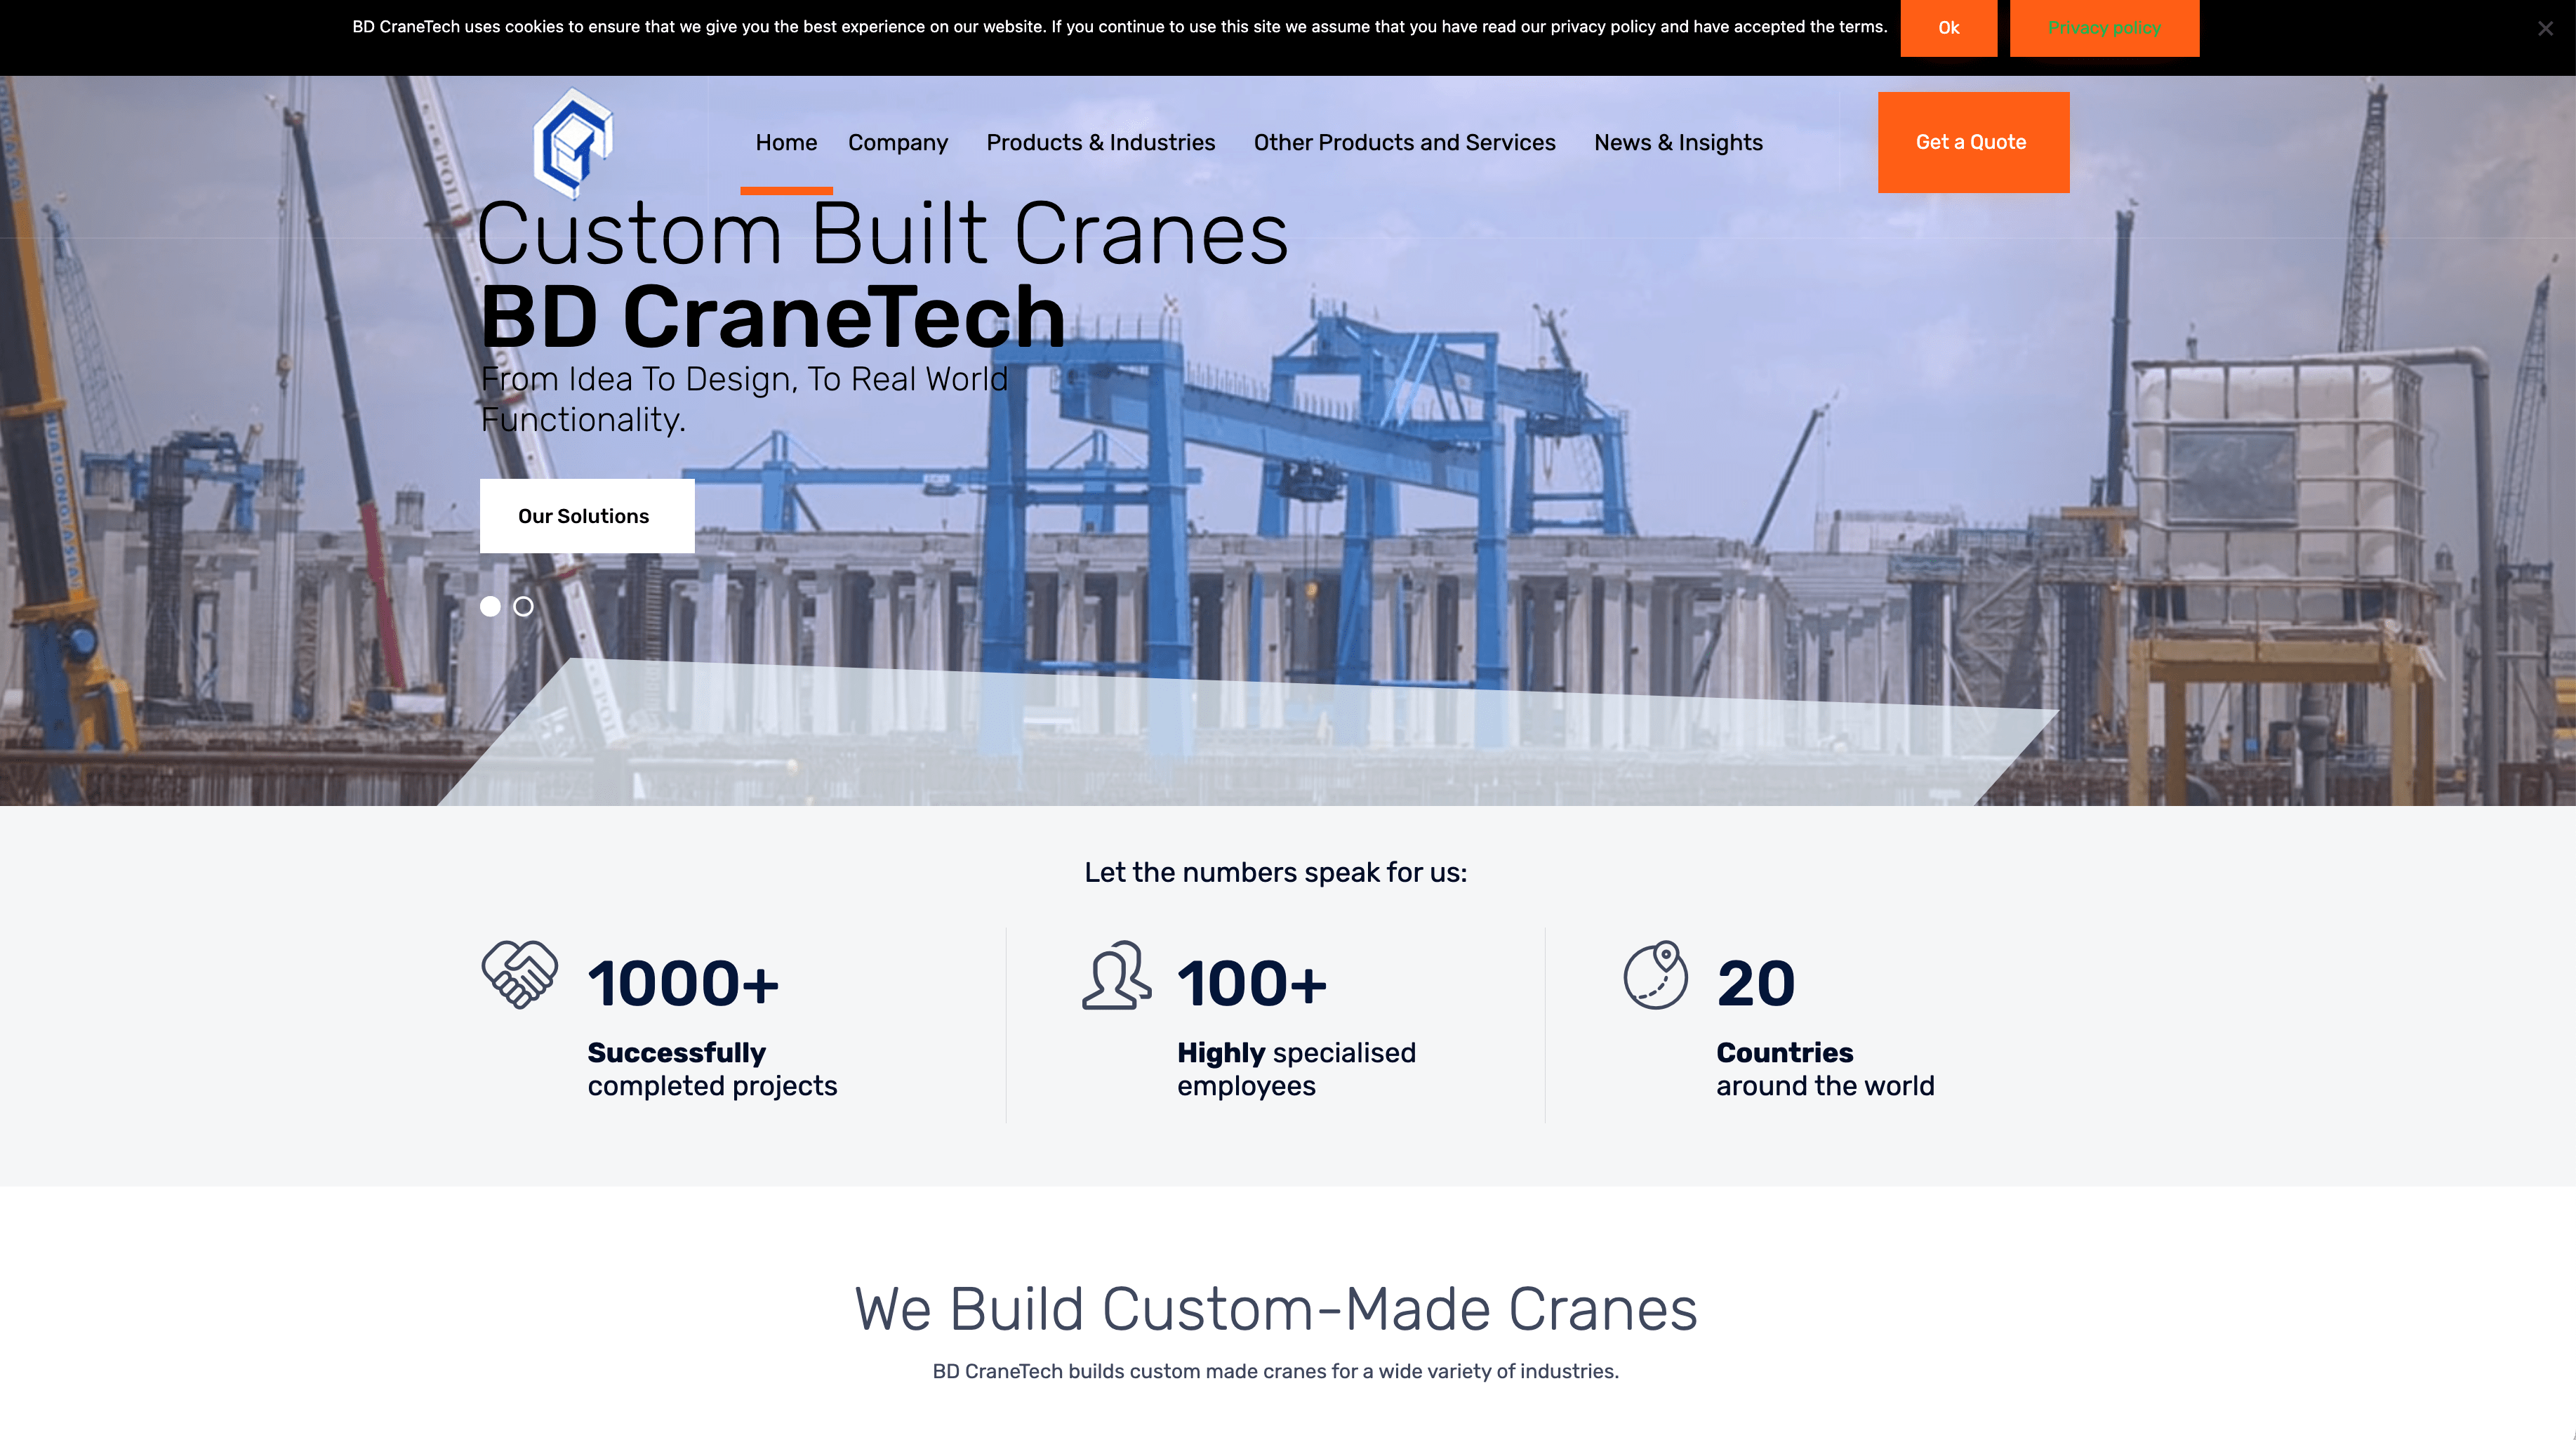 BD Cranetech website image